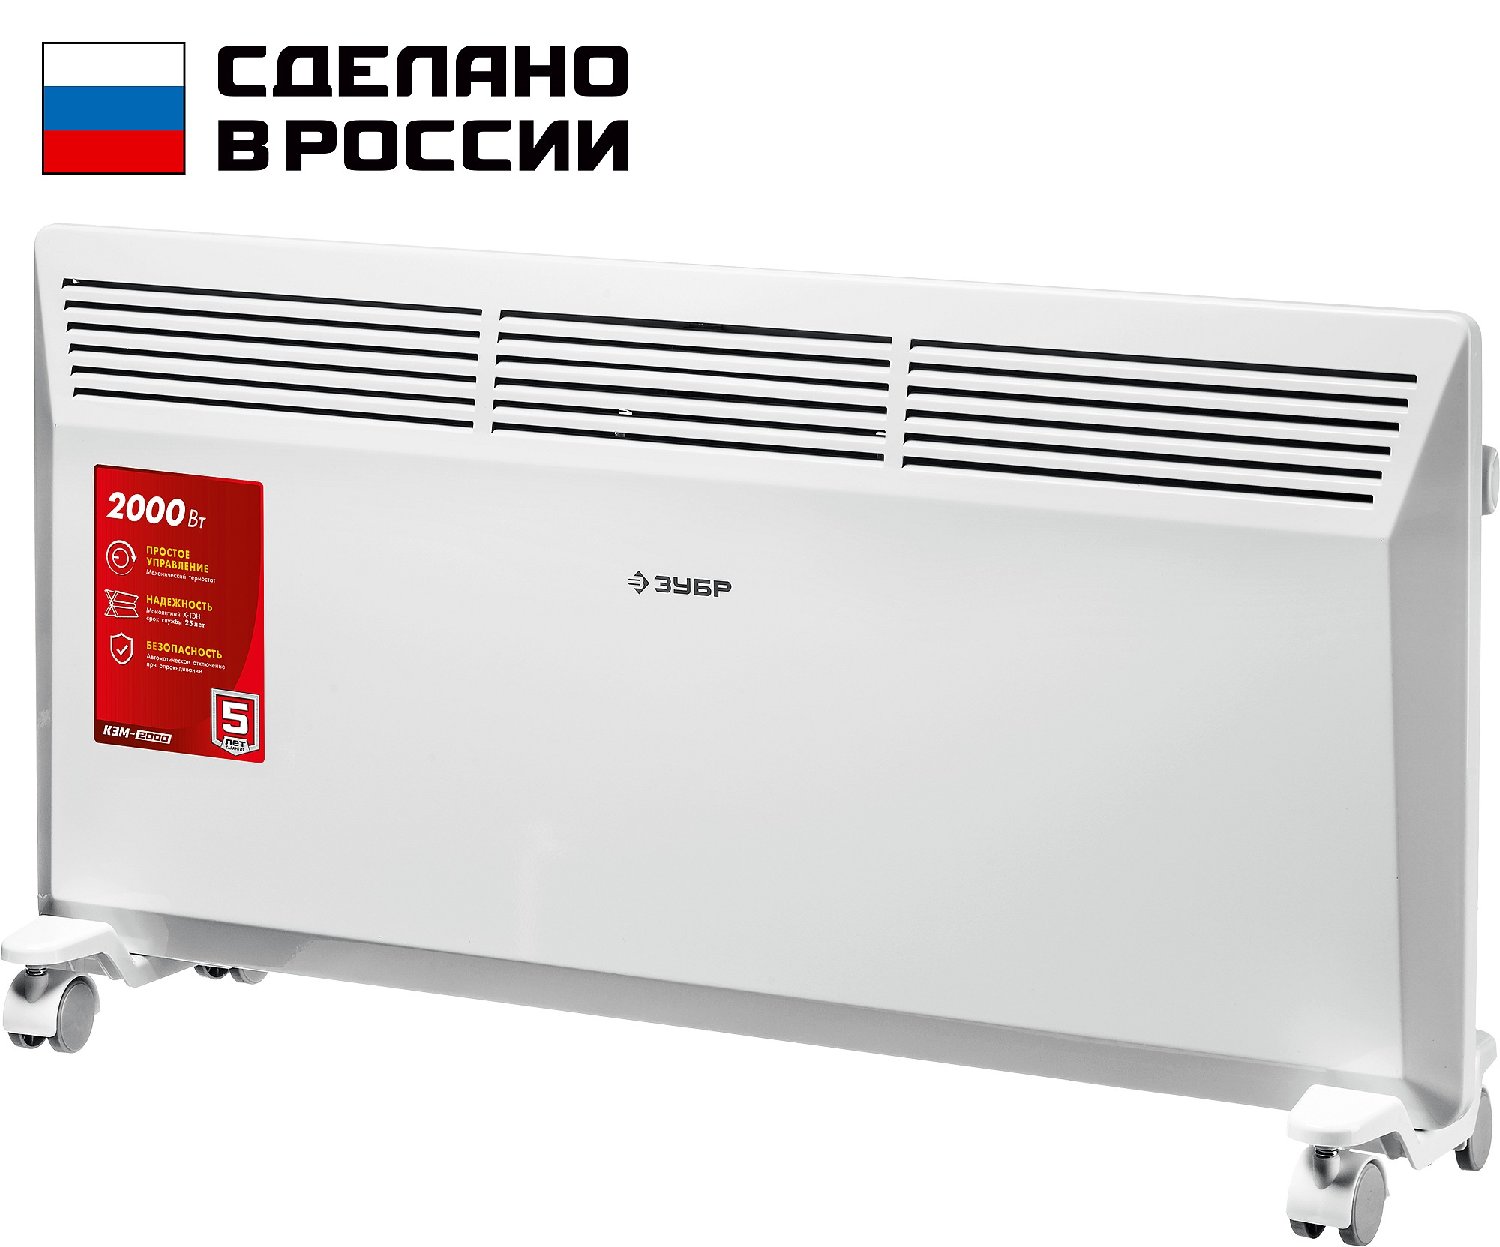 ЗУБР М серия 2 кВт, электрический конвектор () (КЭМ-2000)Купить